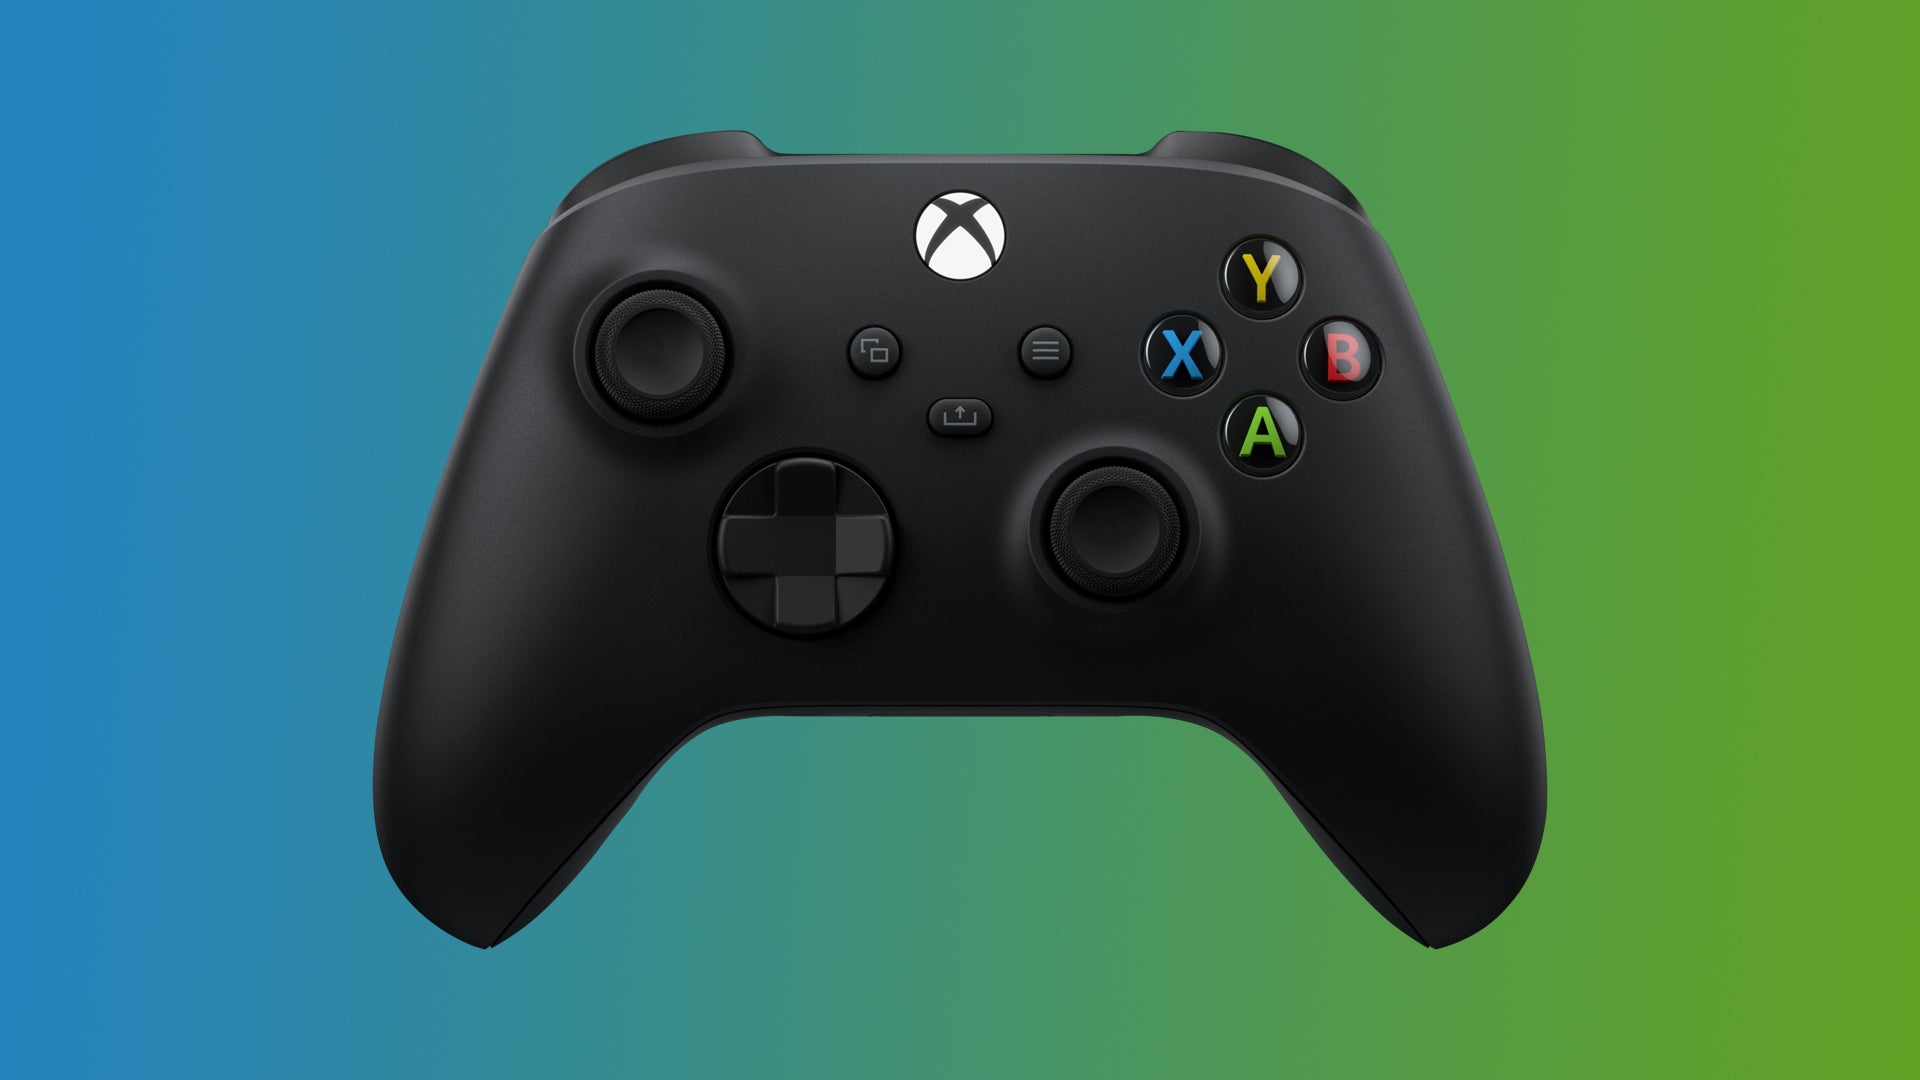 青から緑へのグラデーションの背景にある Xbox ワイヤレス コントローラーの画像